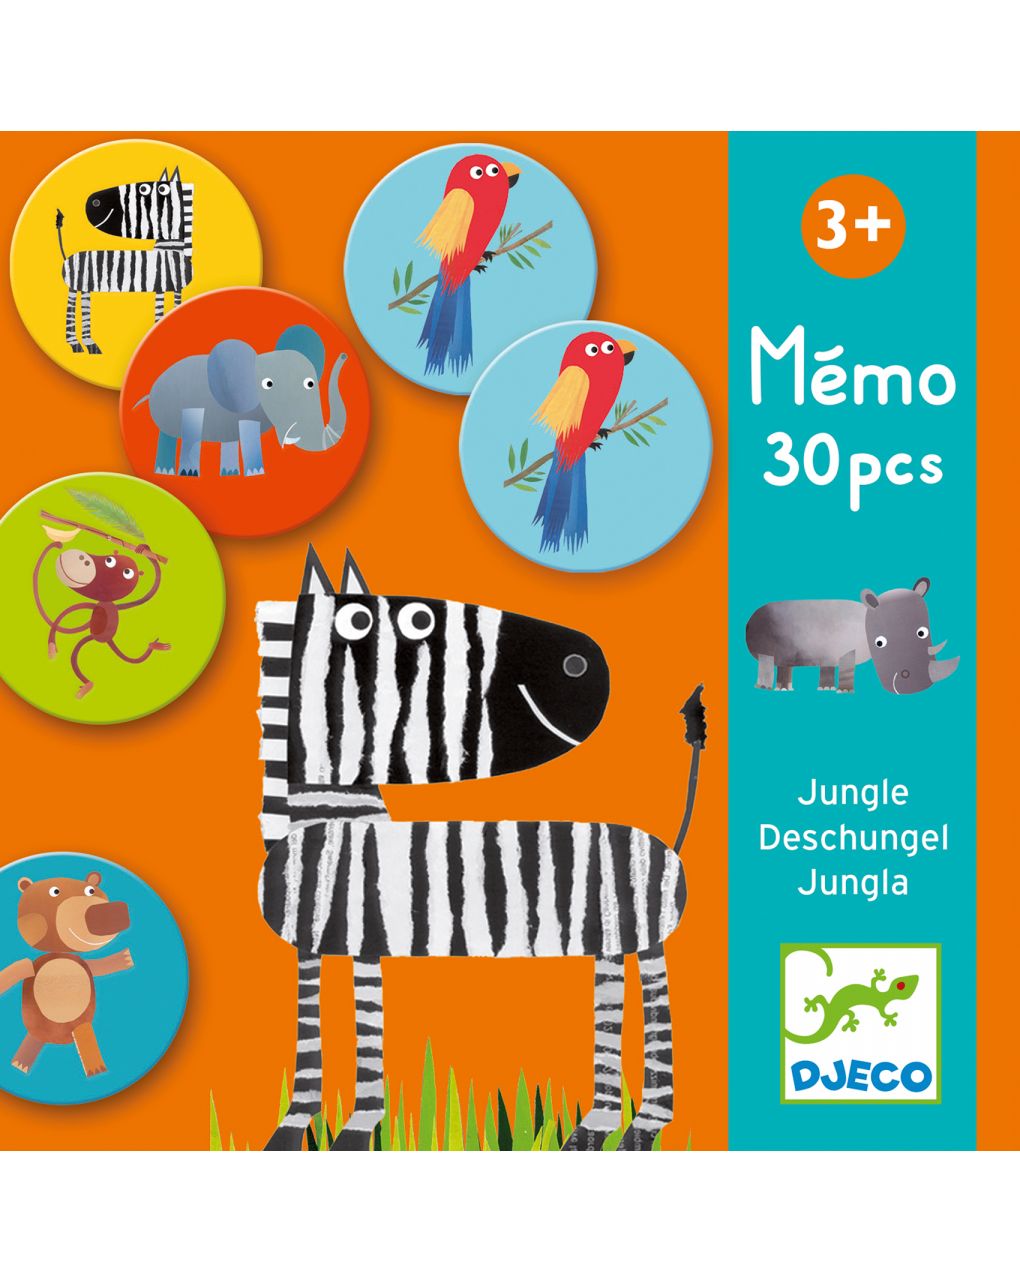 Memo jungle 30 elementi - djeco - Djeco